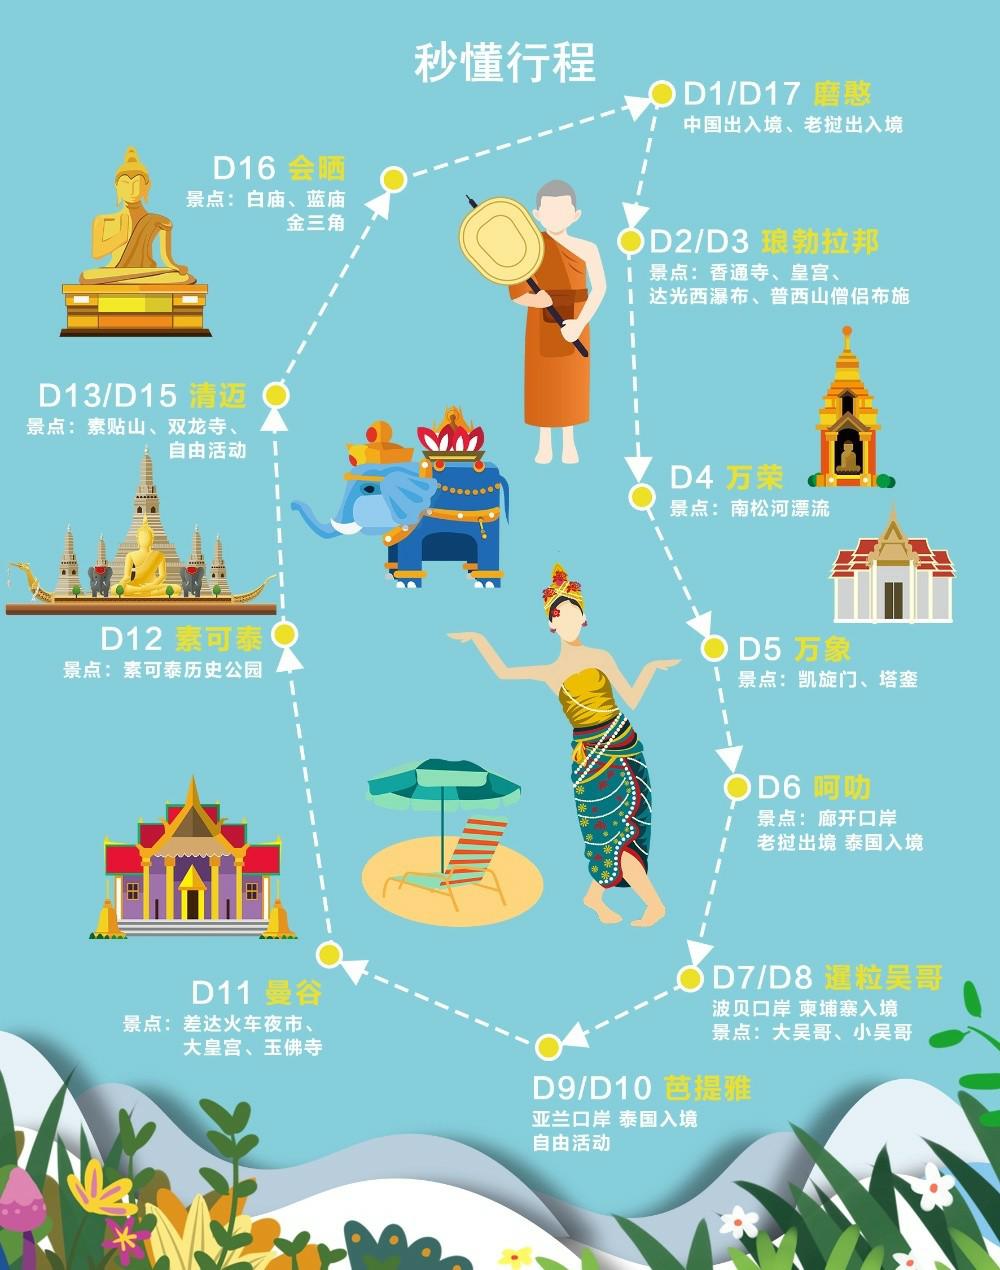 春节东南亚自驾游简易行程